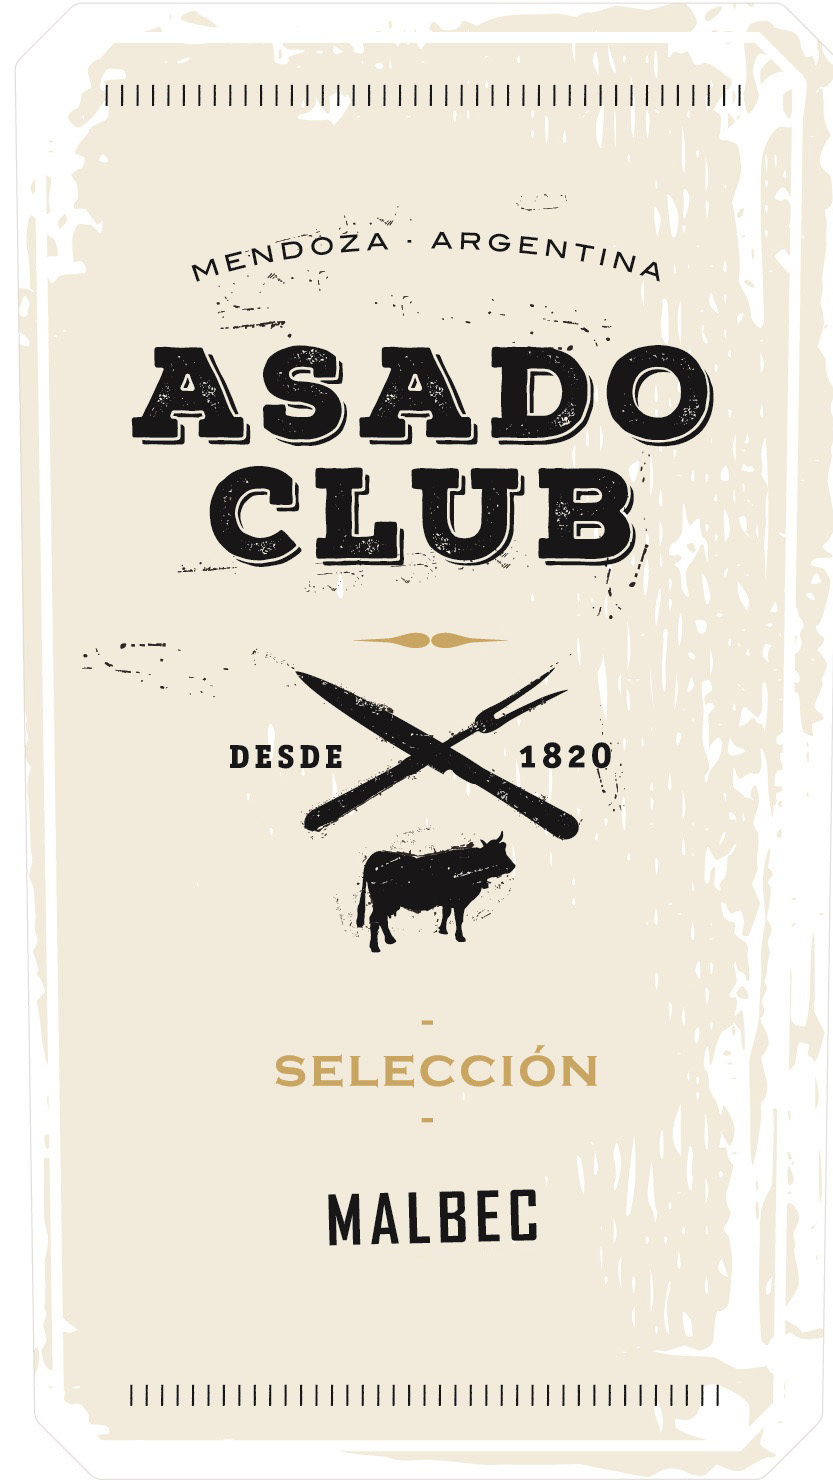 Asado Club - Seleccion Malbec label